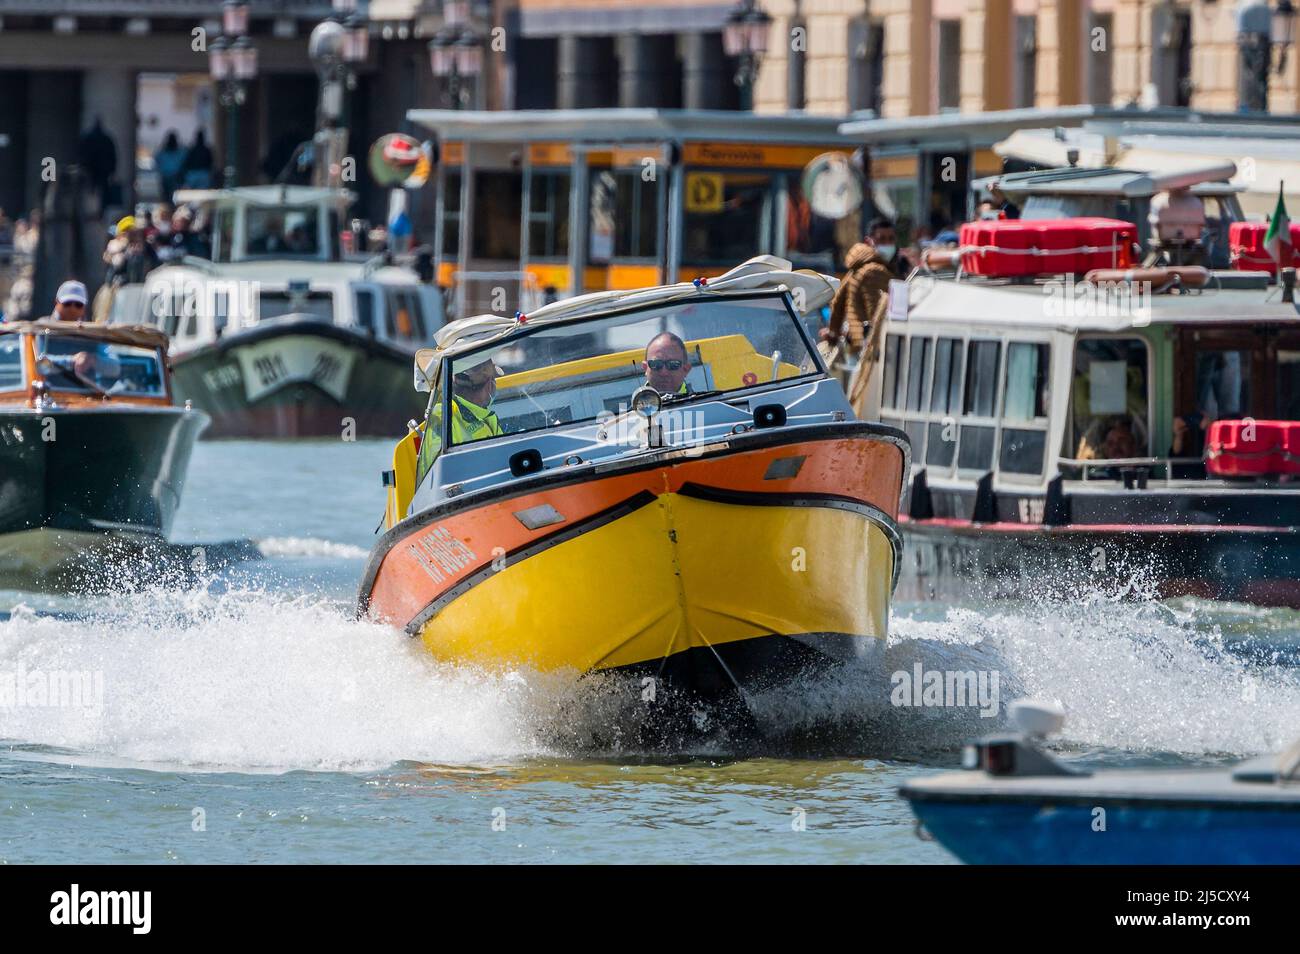 Un ambulance se précipite vers un incident à la gare principale - les canaux sont les artères principales portant toutes les formes de transport d'eau - Venise au début de la Biennale di Venezia en 2022. Banque D'Images